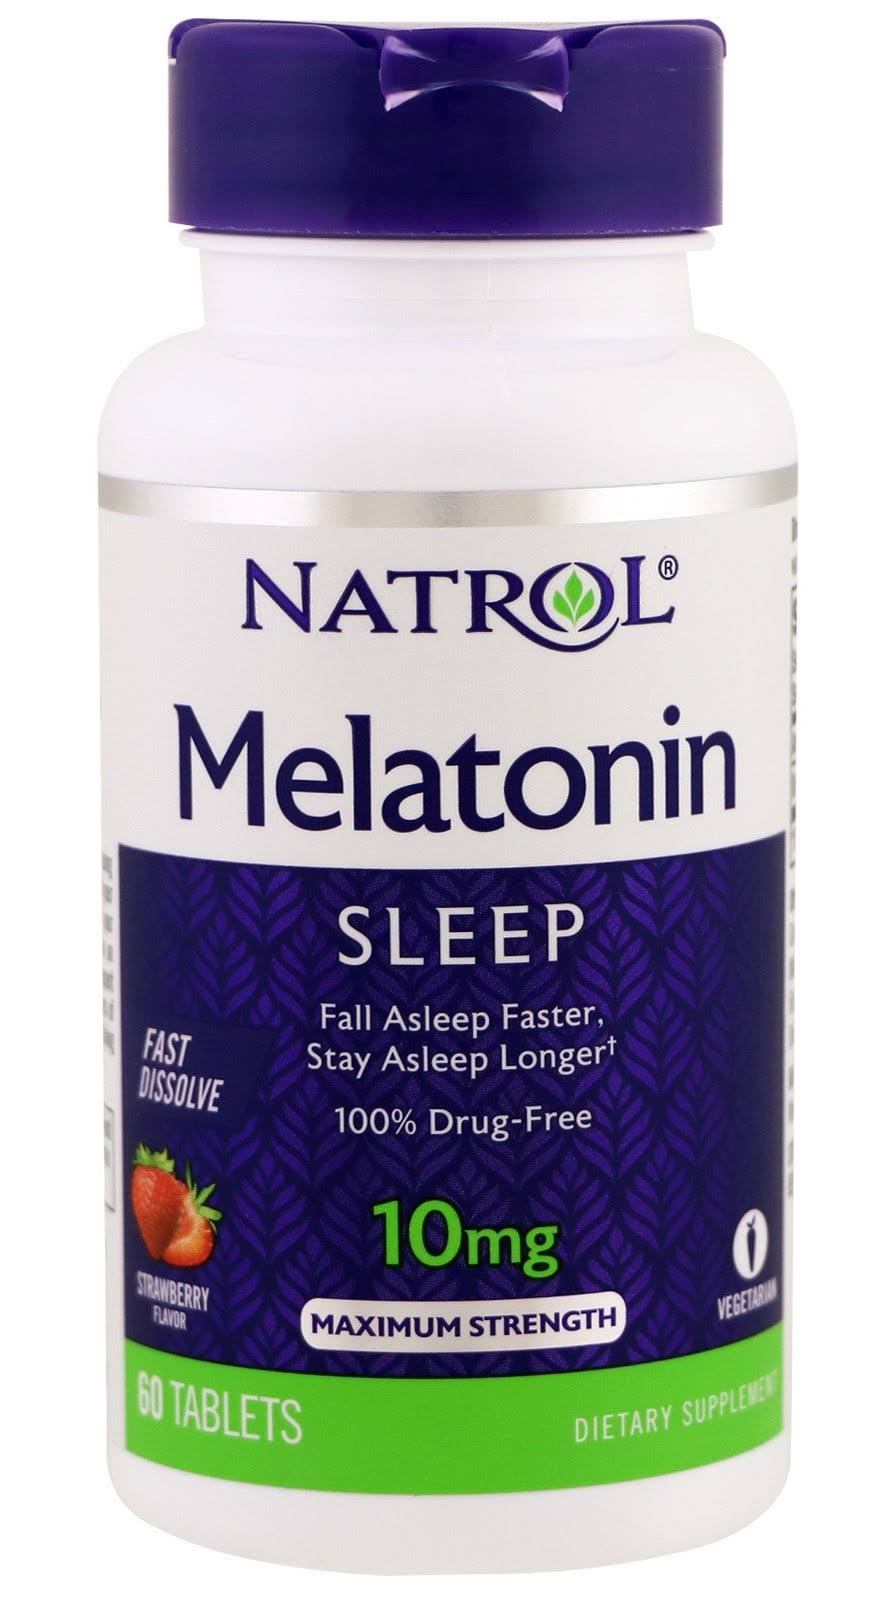 Natrol Melatonin Fast Dissolve Tablets - Citrus Punch, 10mg, 60 Tablets